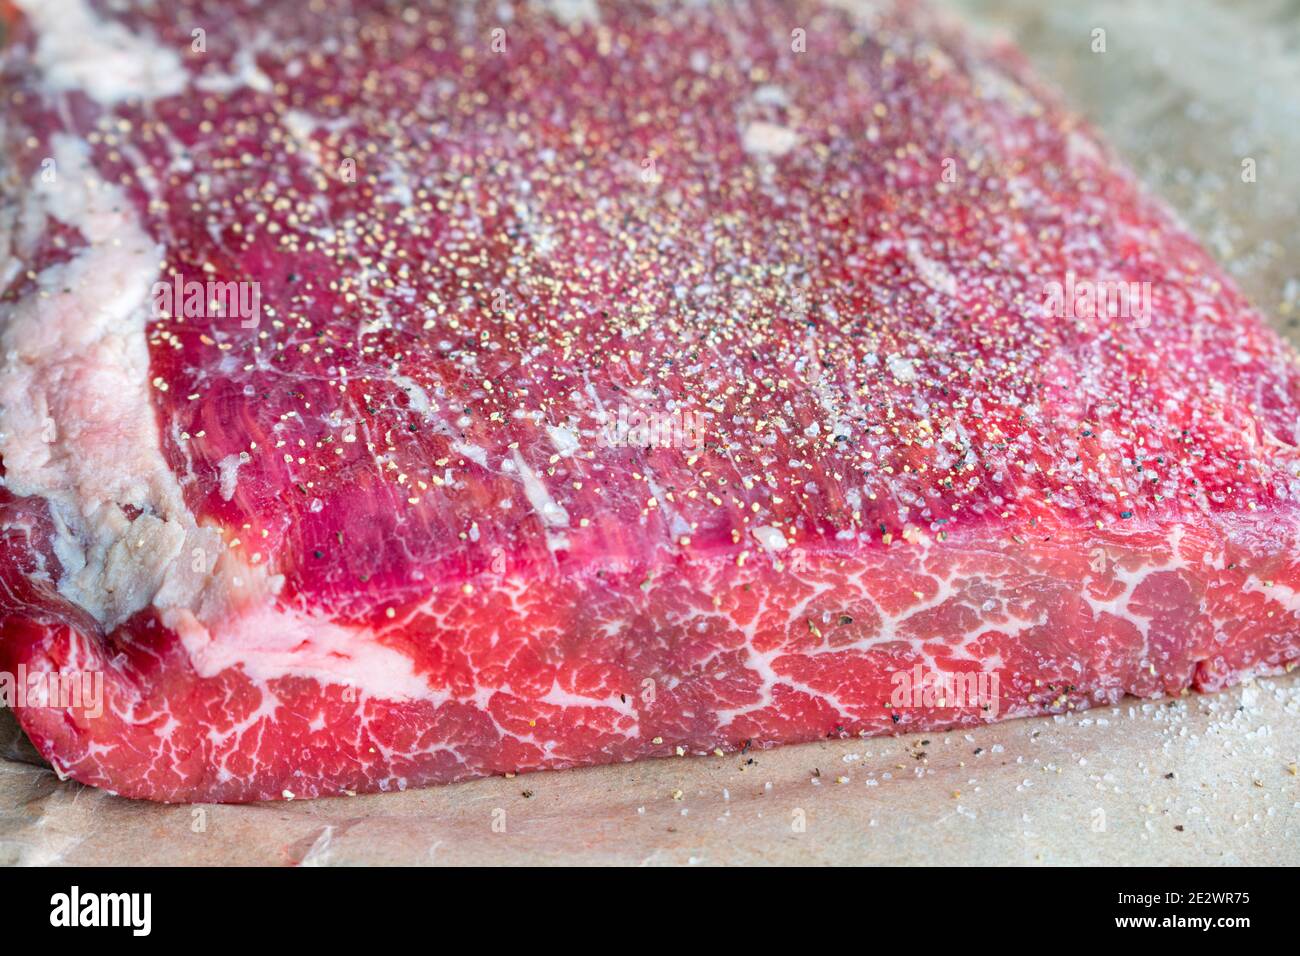 Bistecca cruda fiancata su carta da macello: Filetto di briglia londinese non cotti su carta marrone condito con sale e pepe Foto Stock